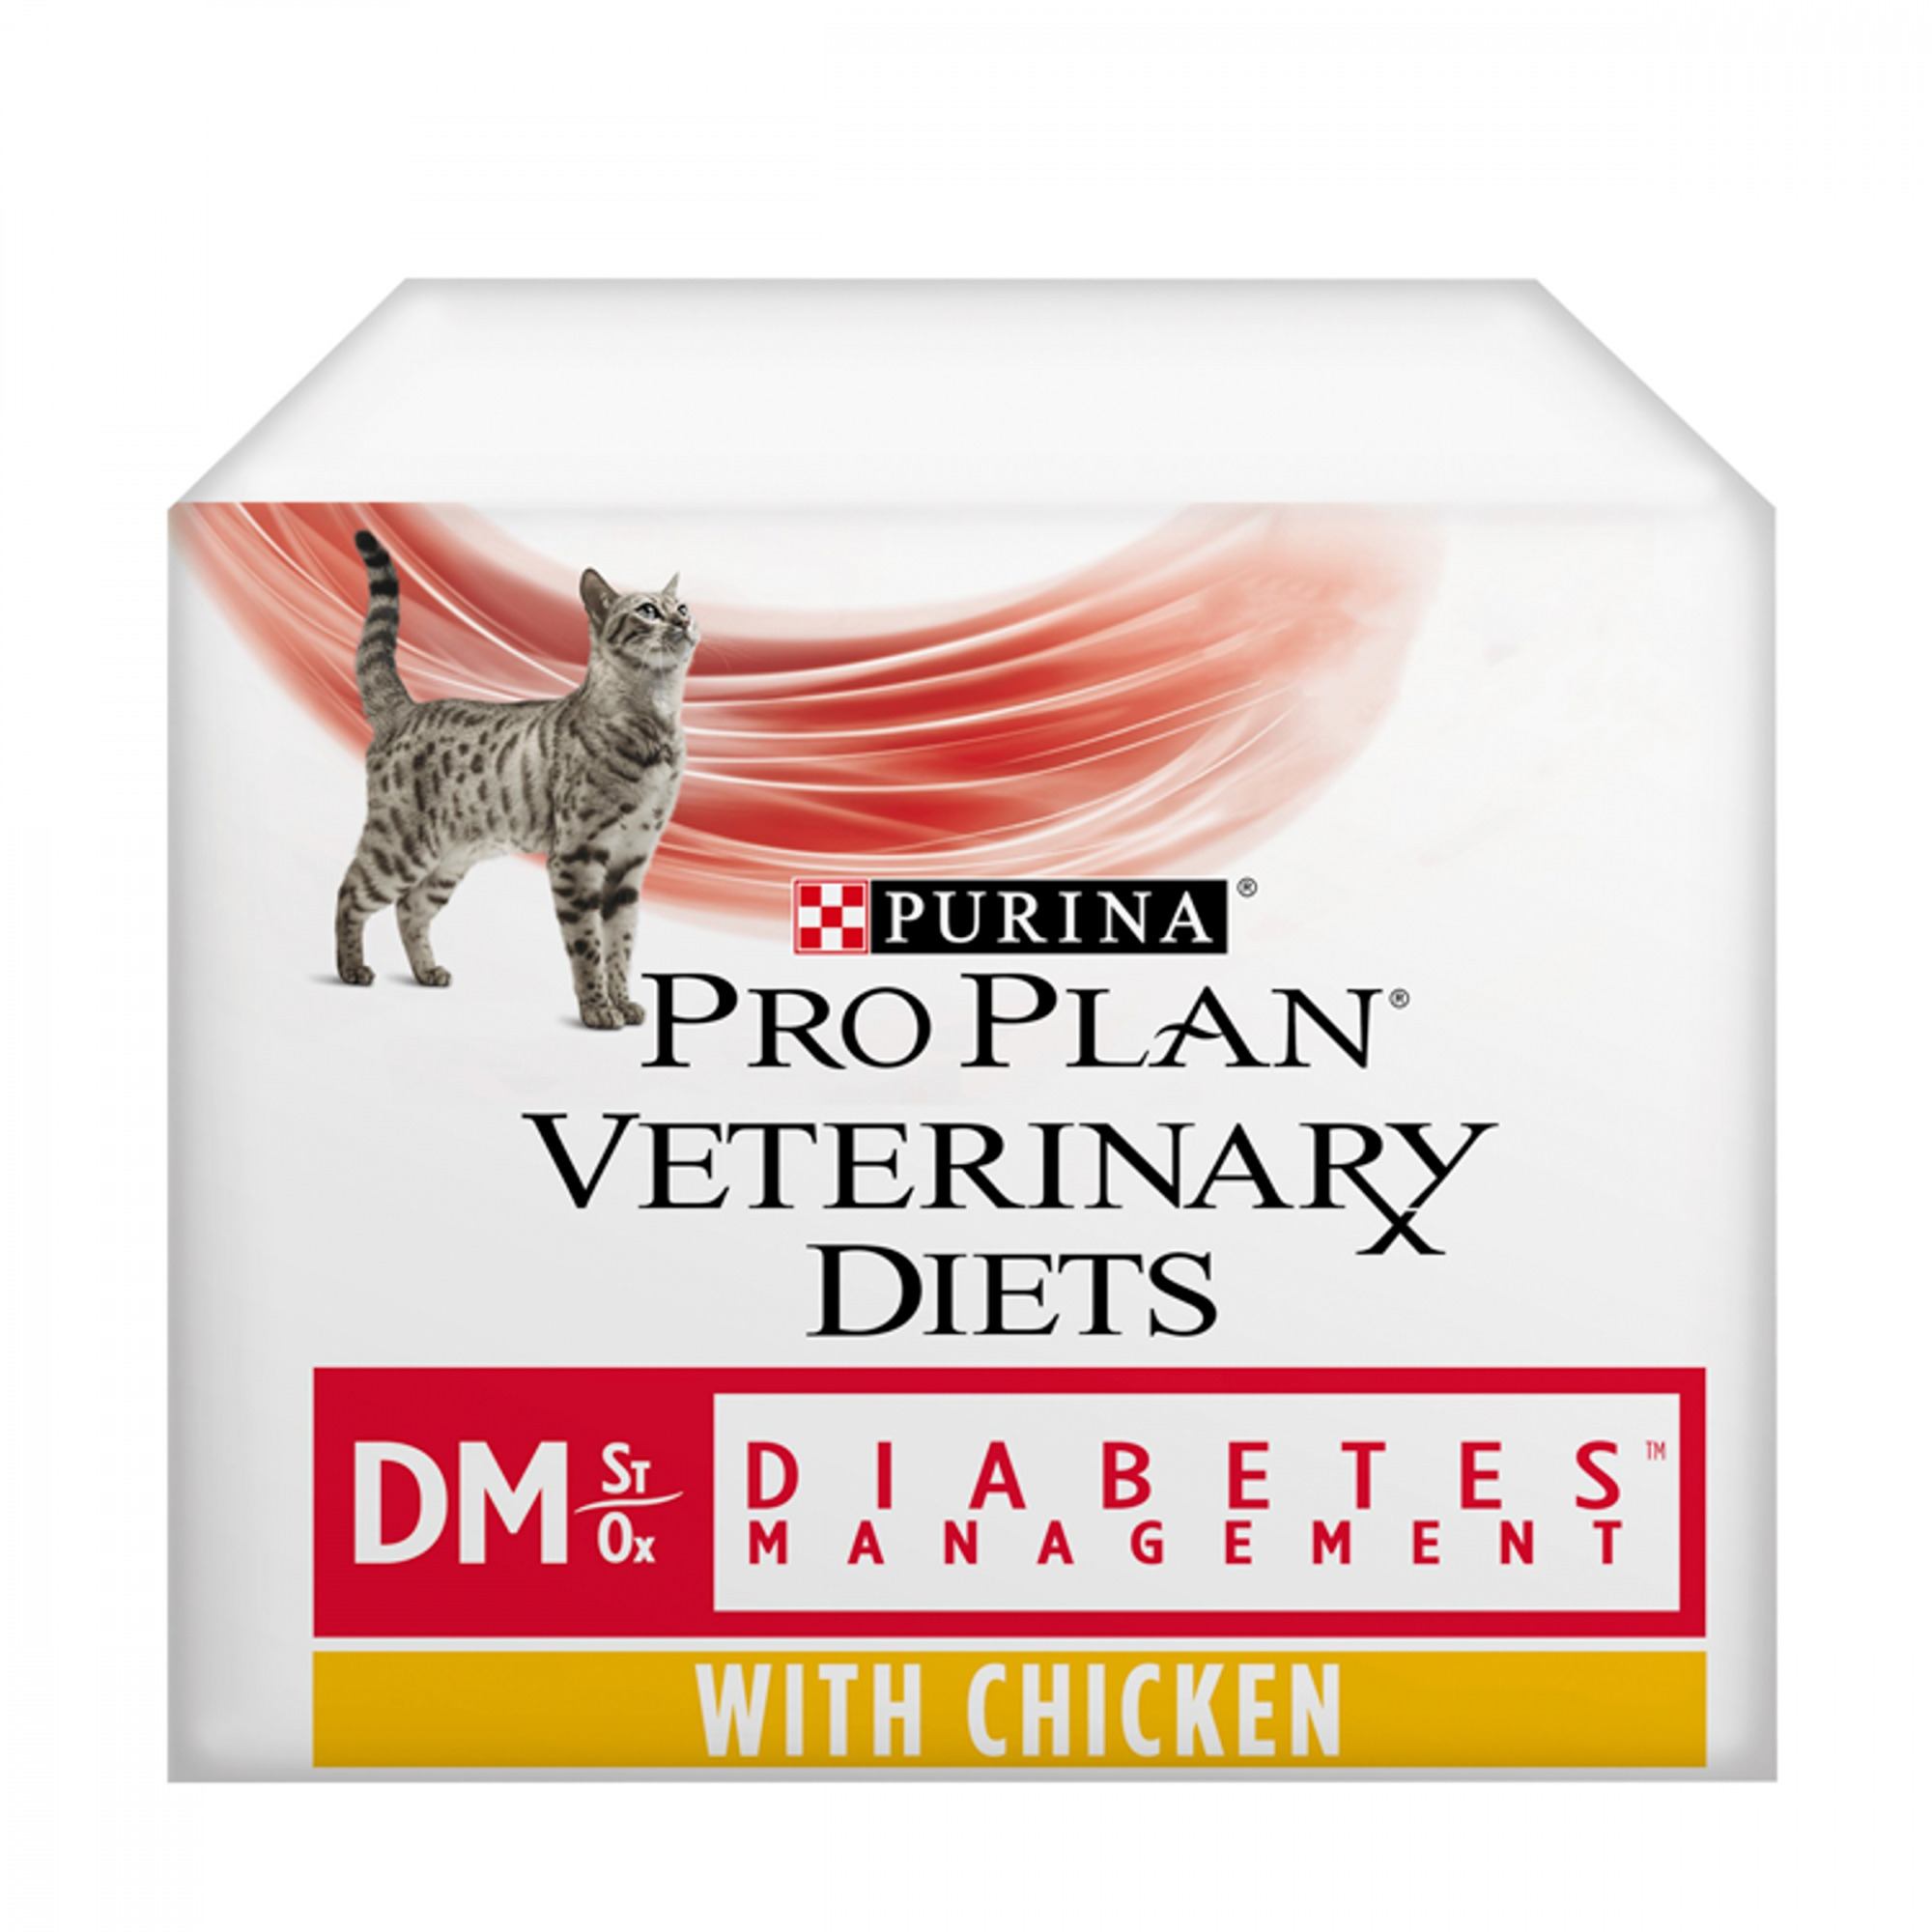 PRO PLAN VETERINARY DIETS DM Diabetes Management Wet Cat Food